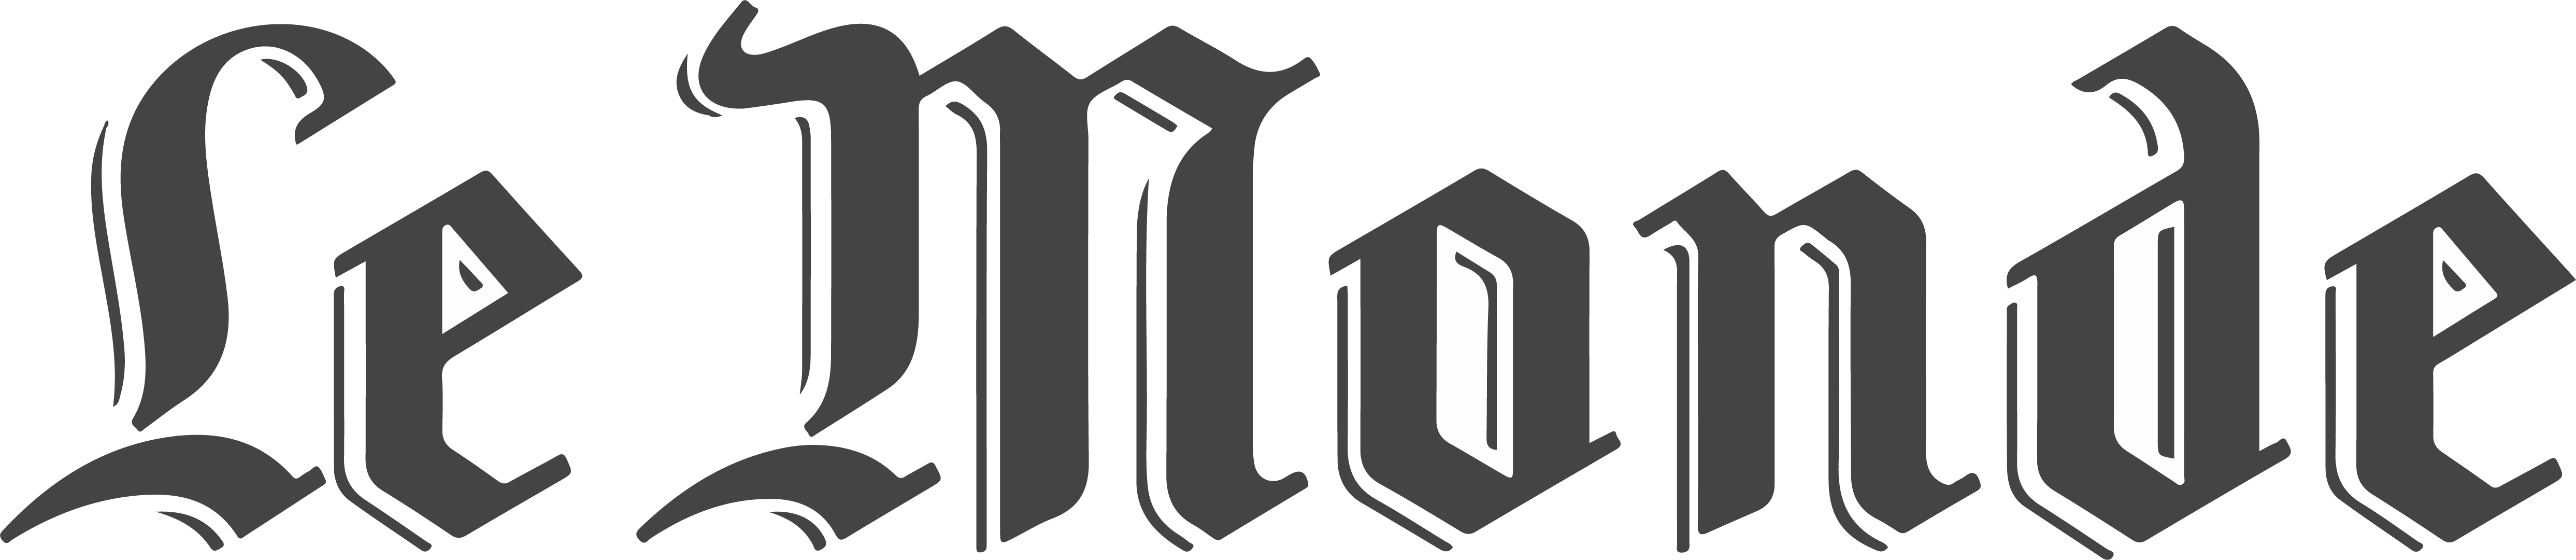 Logo Le Monde - Gris